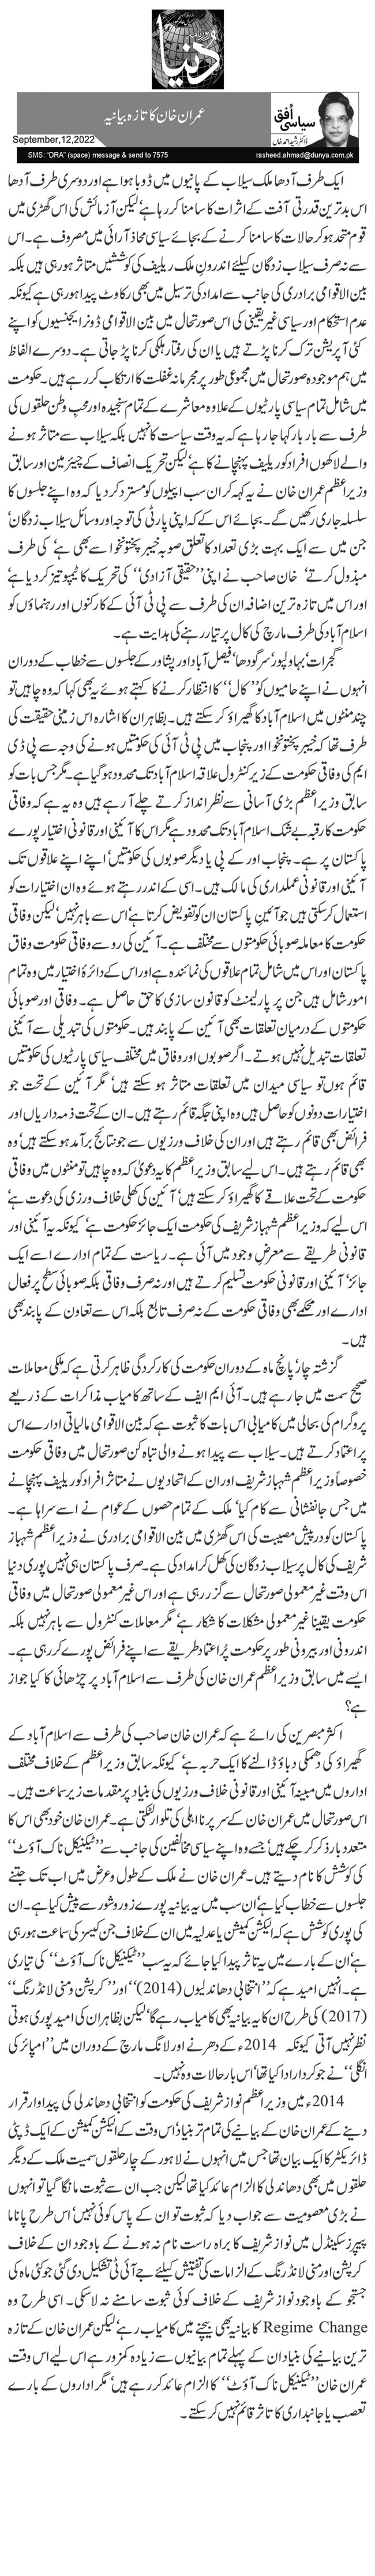  عمران خان کا تازہ بیانیہ